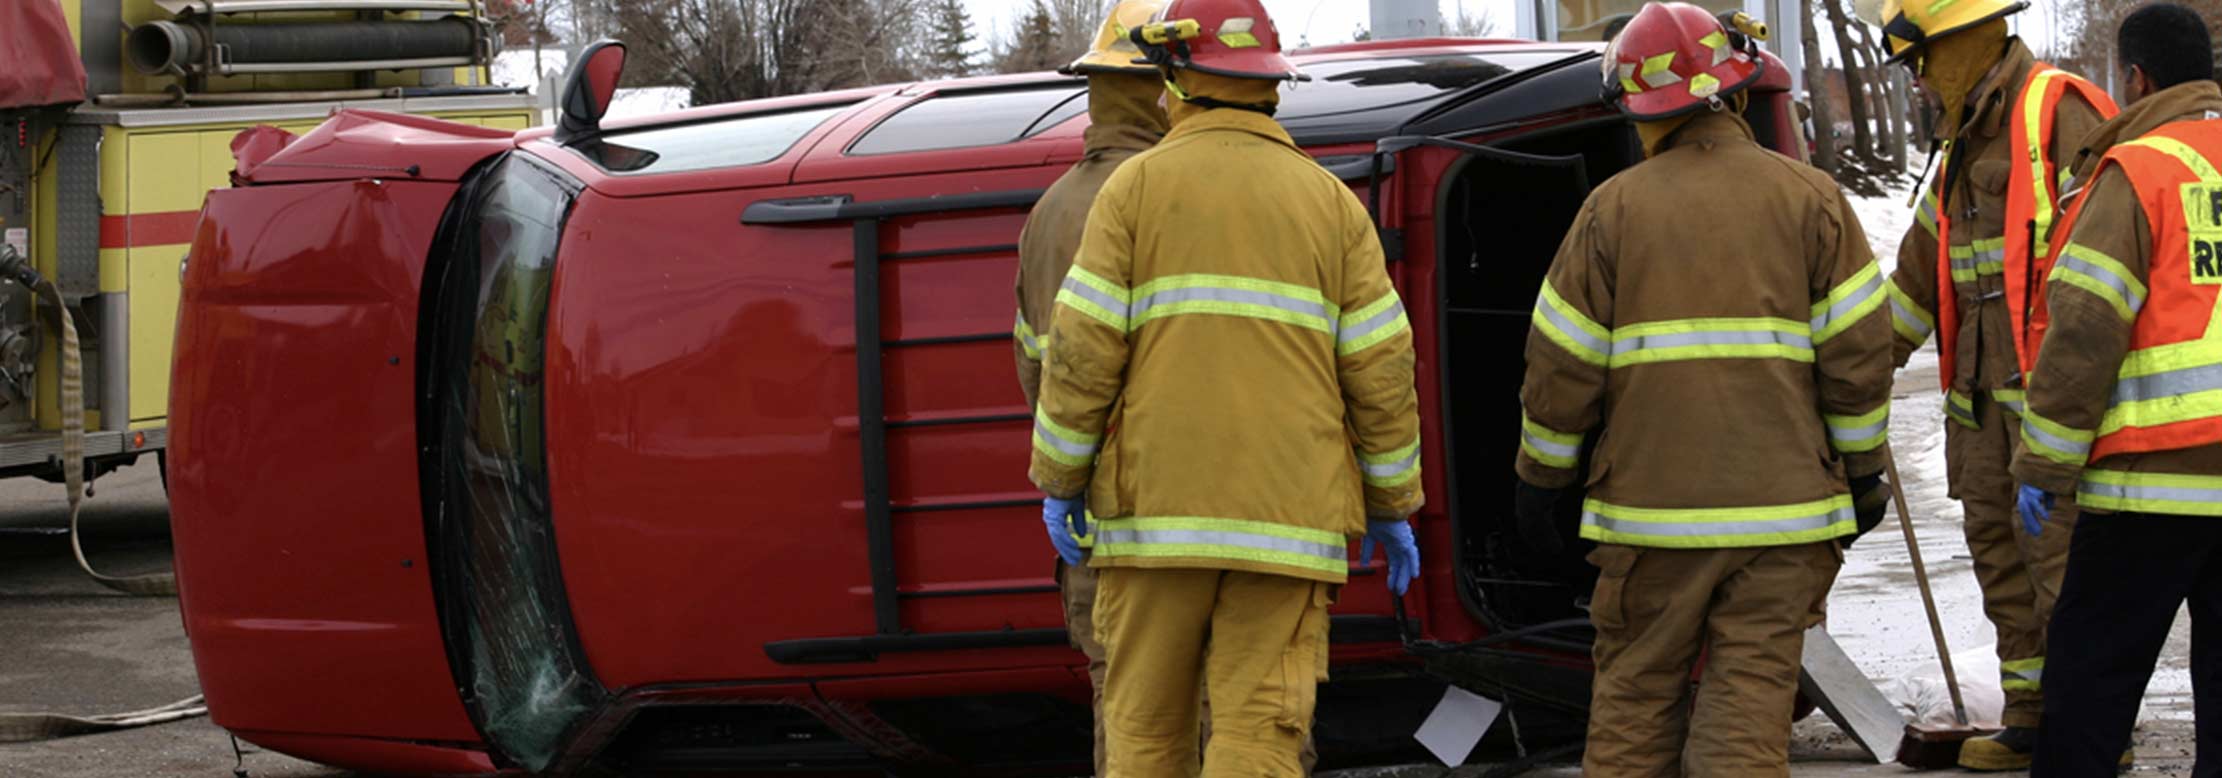 Paramedics help victims of a car accident.